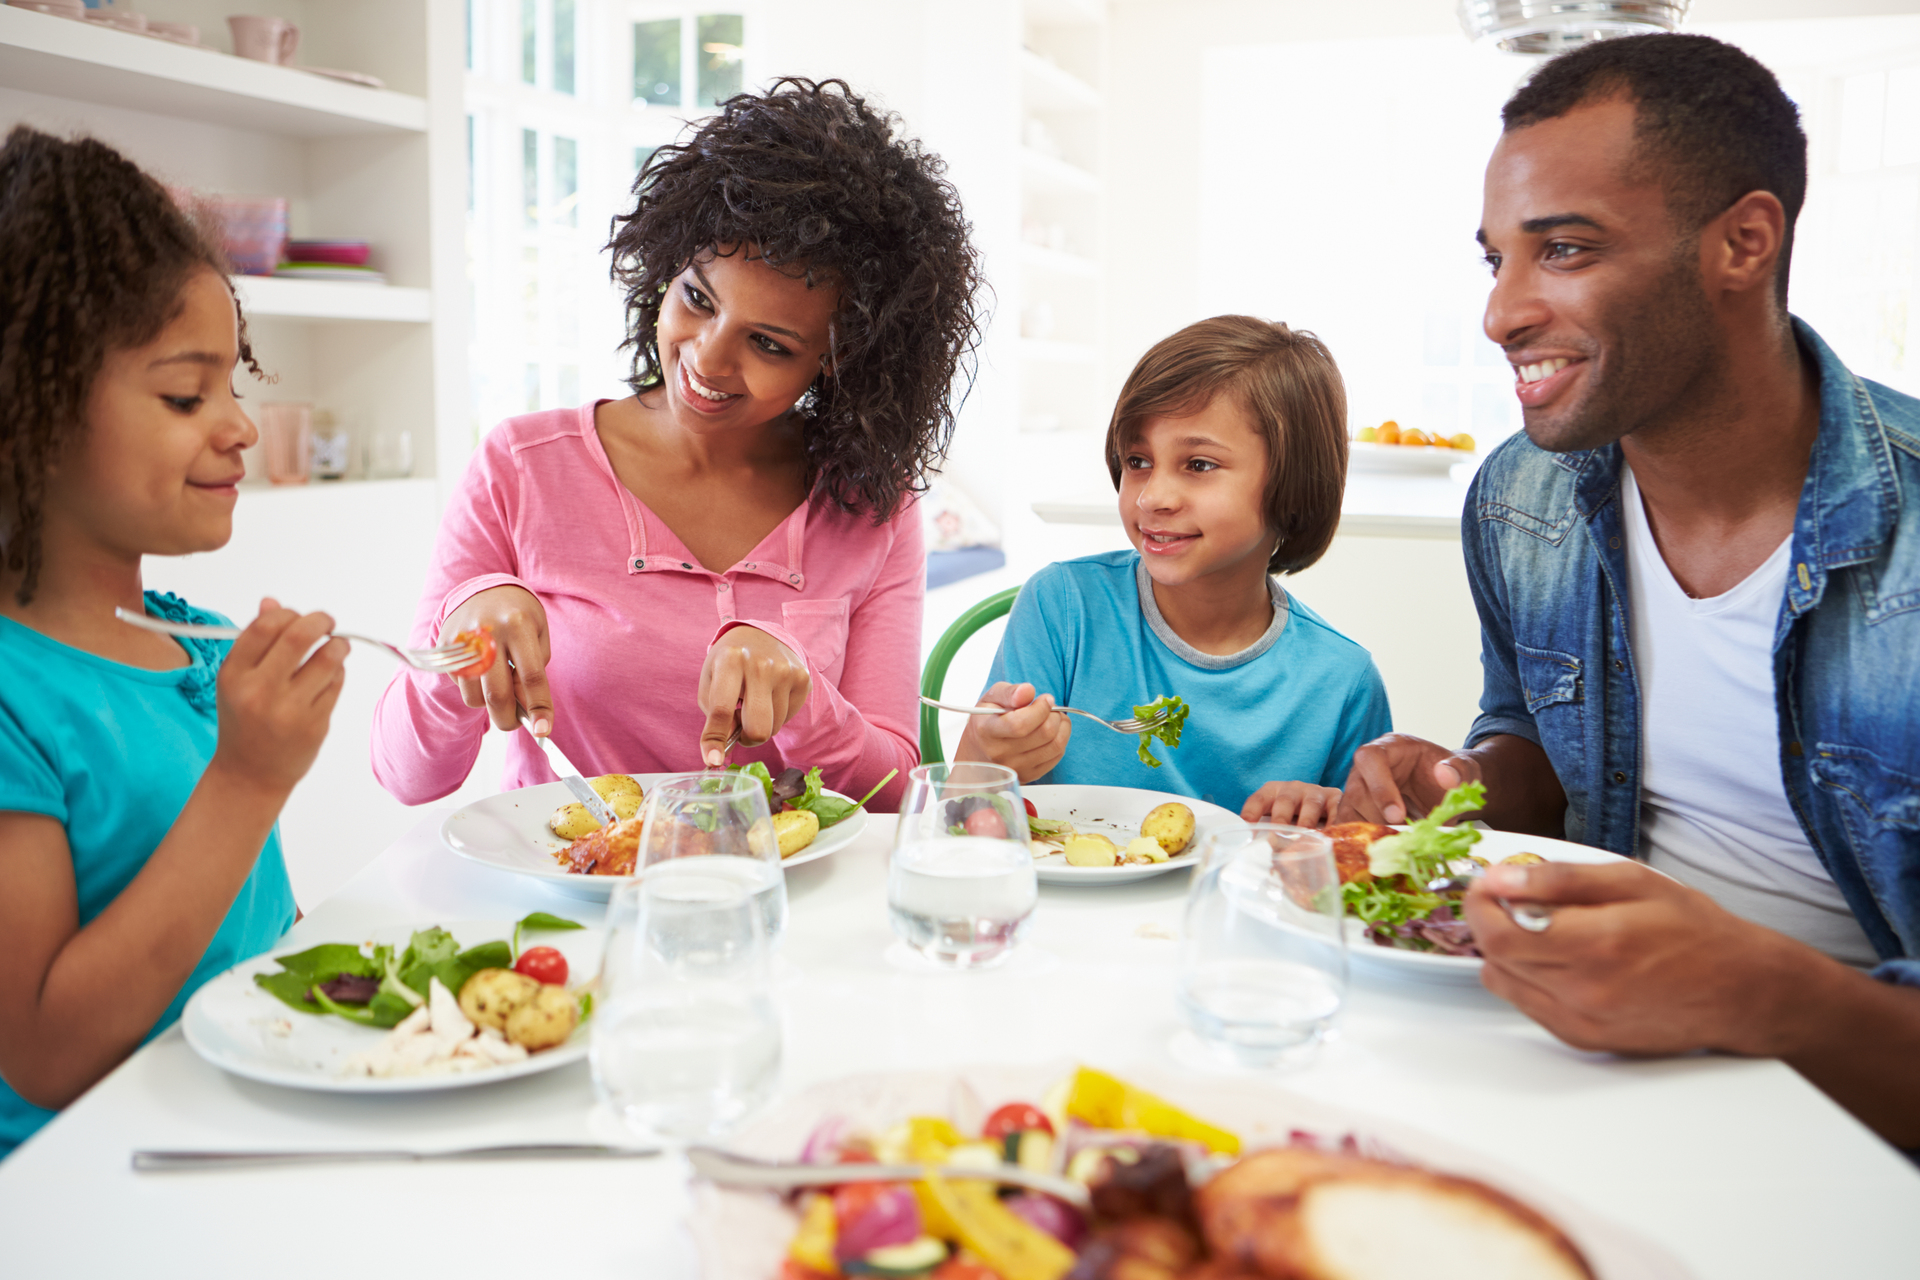 Na tym ujmującym obrazku widzimy rodzinę, która siedzi razem przy białym stole i cieszy się wspólnym posiłkiem. Atmosfera jest spokojna i pełna harmonii, a obraz oddaje ważność jedzenia w towarzystwie najbliższych. Rodzina jest skupiona wokół stołu, który jest pokryty białym obrusem. Widzimy rodziców i dzieci, którzy mają na talerzach ułożone jedzenie. Ich twarze są pełne uśmiechu i radości, co świadczy o tym, że są szczęśliwi i zadowoleni z obecności siebie nawzajem